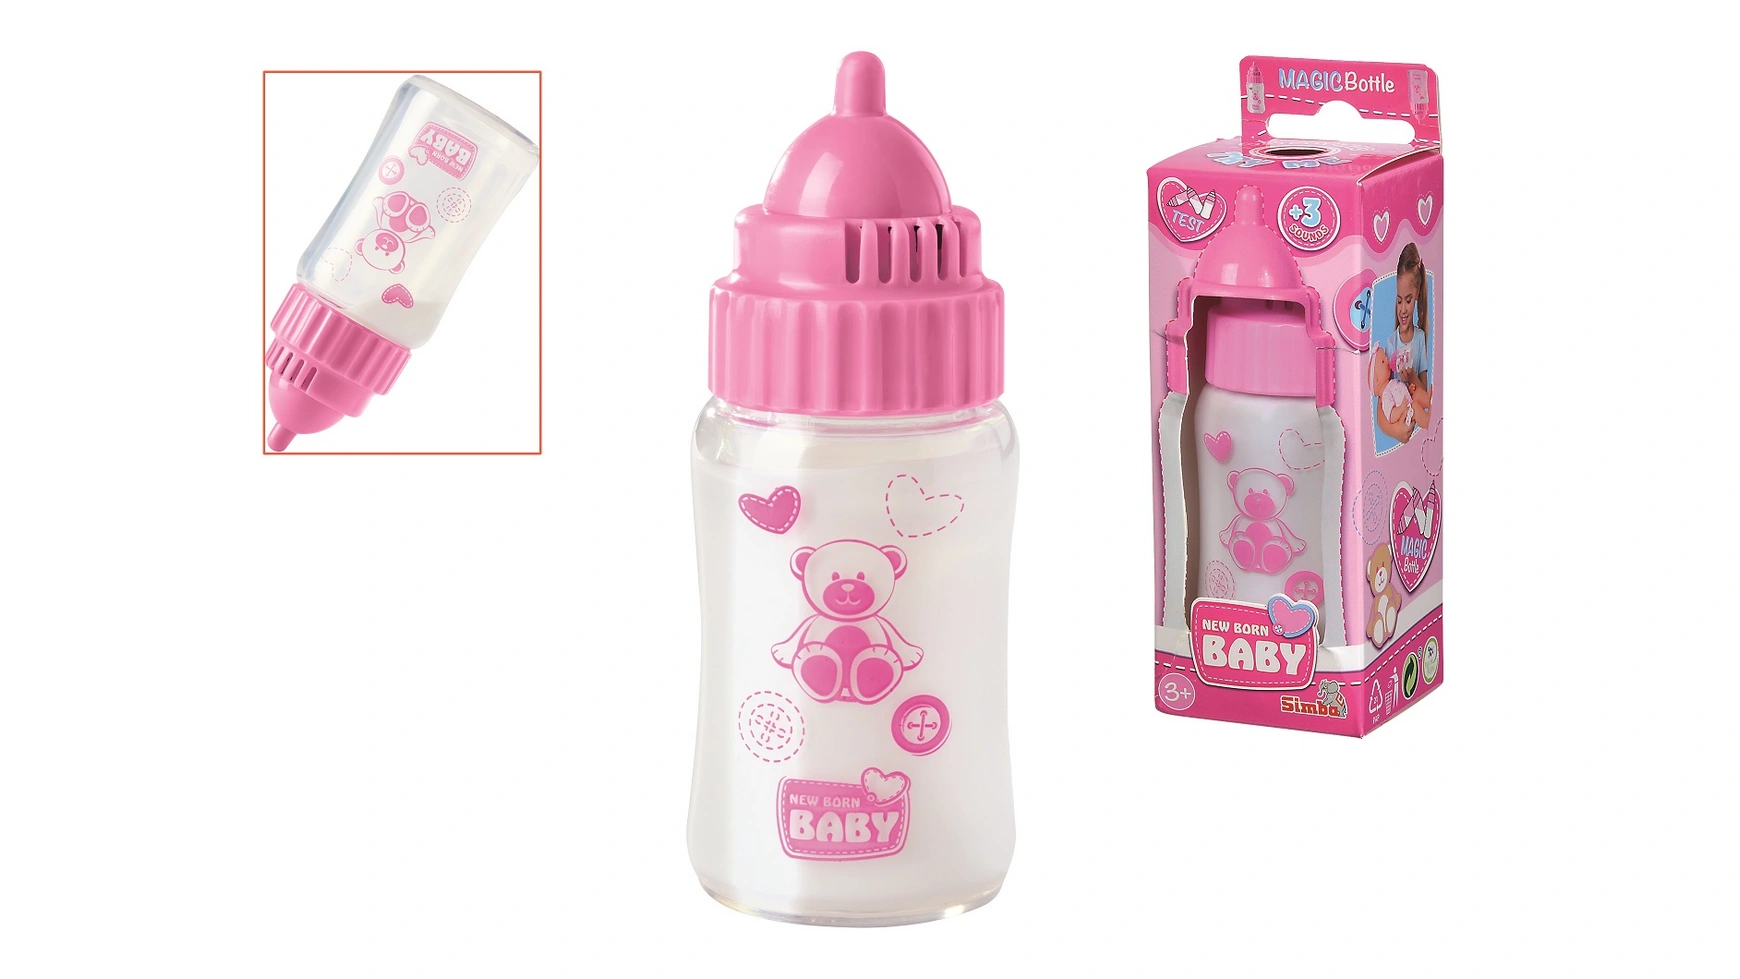 цена Новорожденный ребенок волшебная молочная бутылочка со звуком, молочная бутылочка с исчезающим молоком, 3 детских звука, 13см Simba